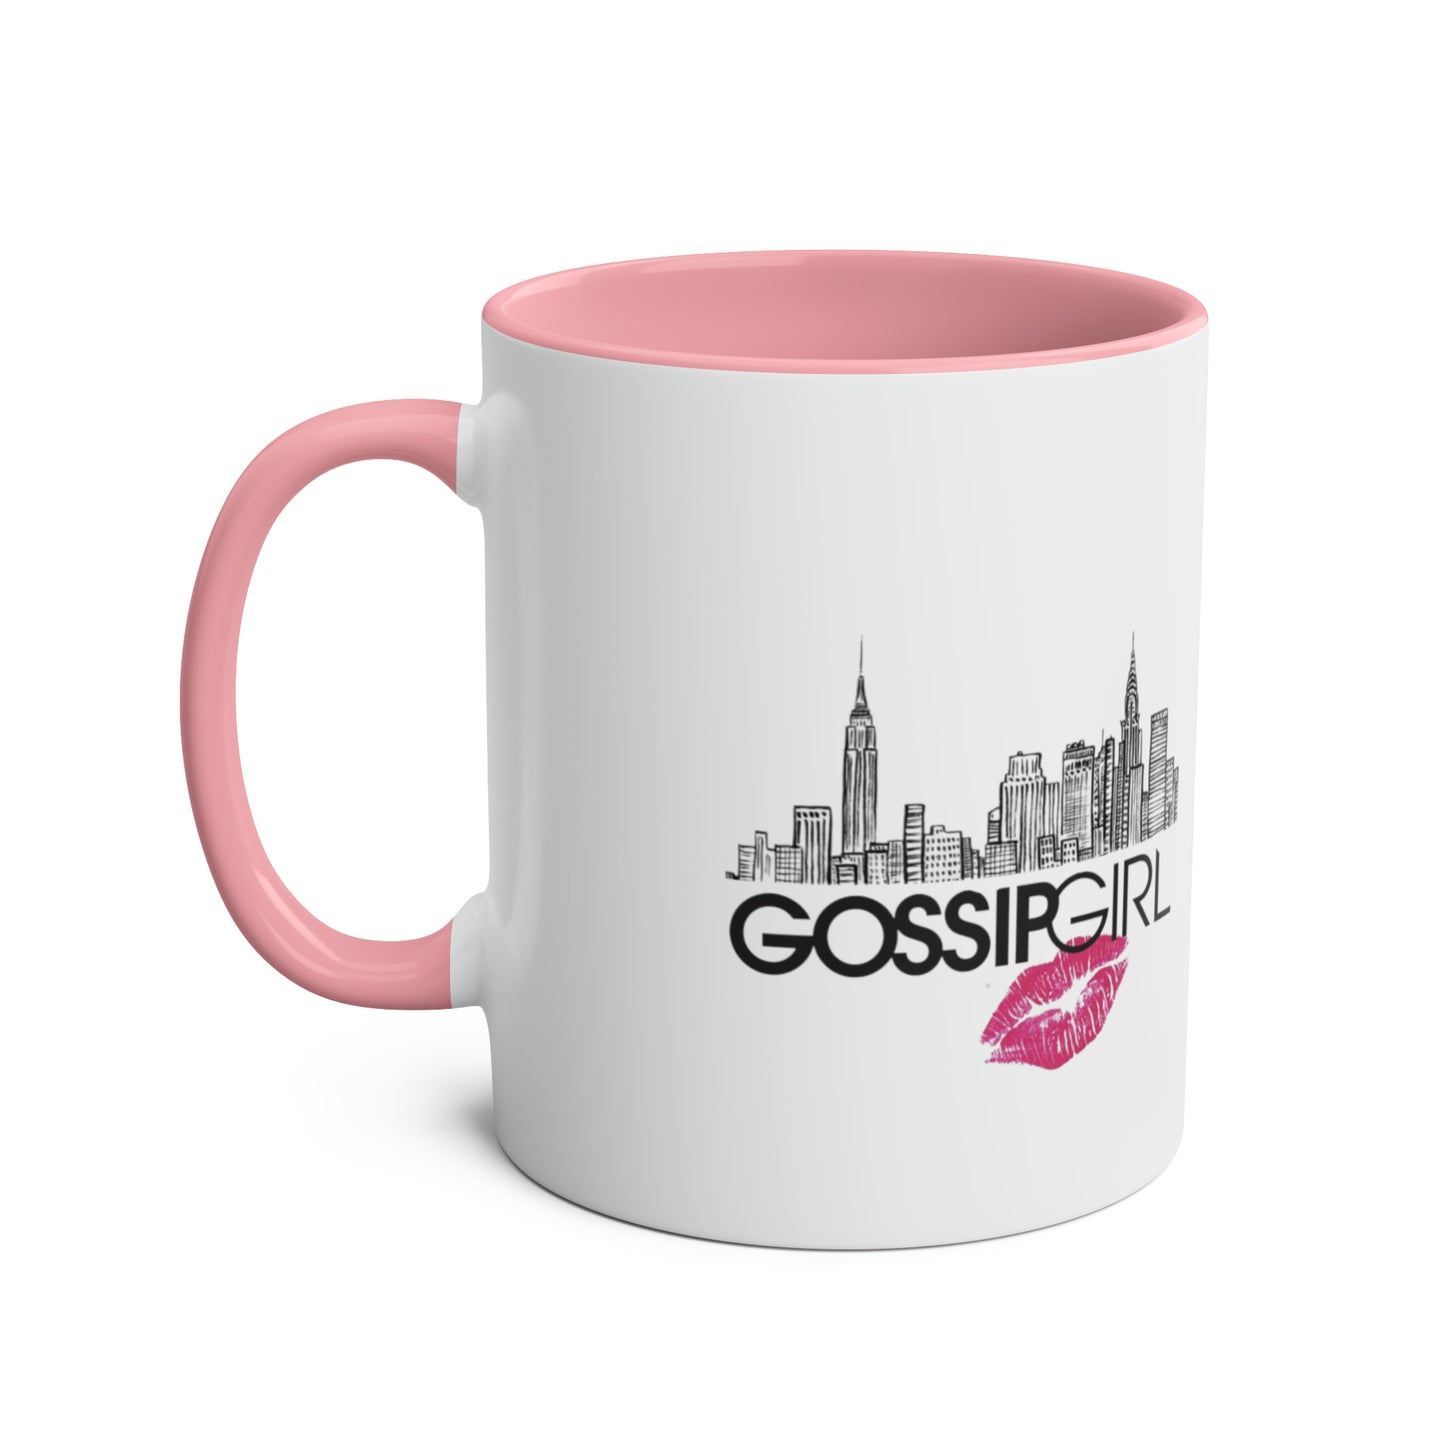 NYC XOXO Gossip Girl / Gossip Girl Mug